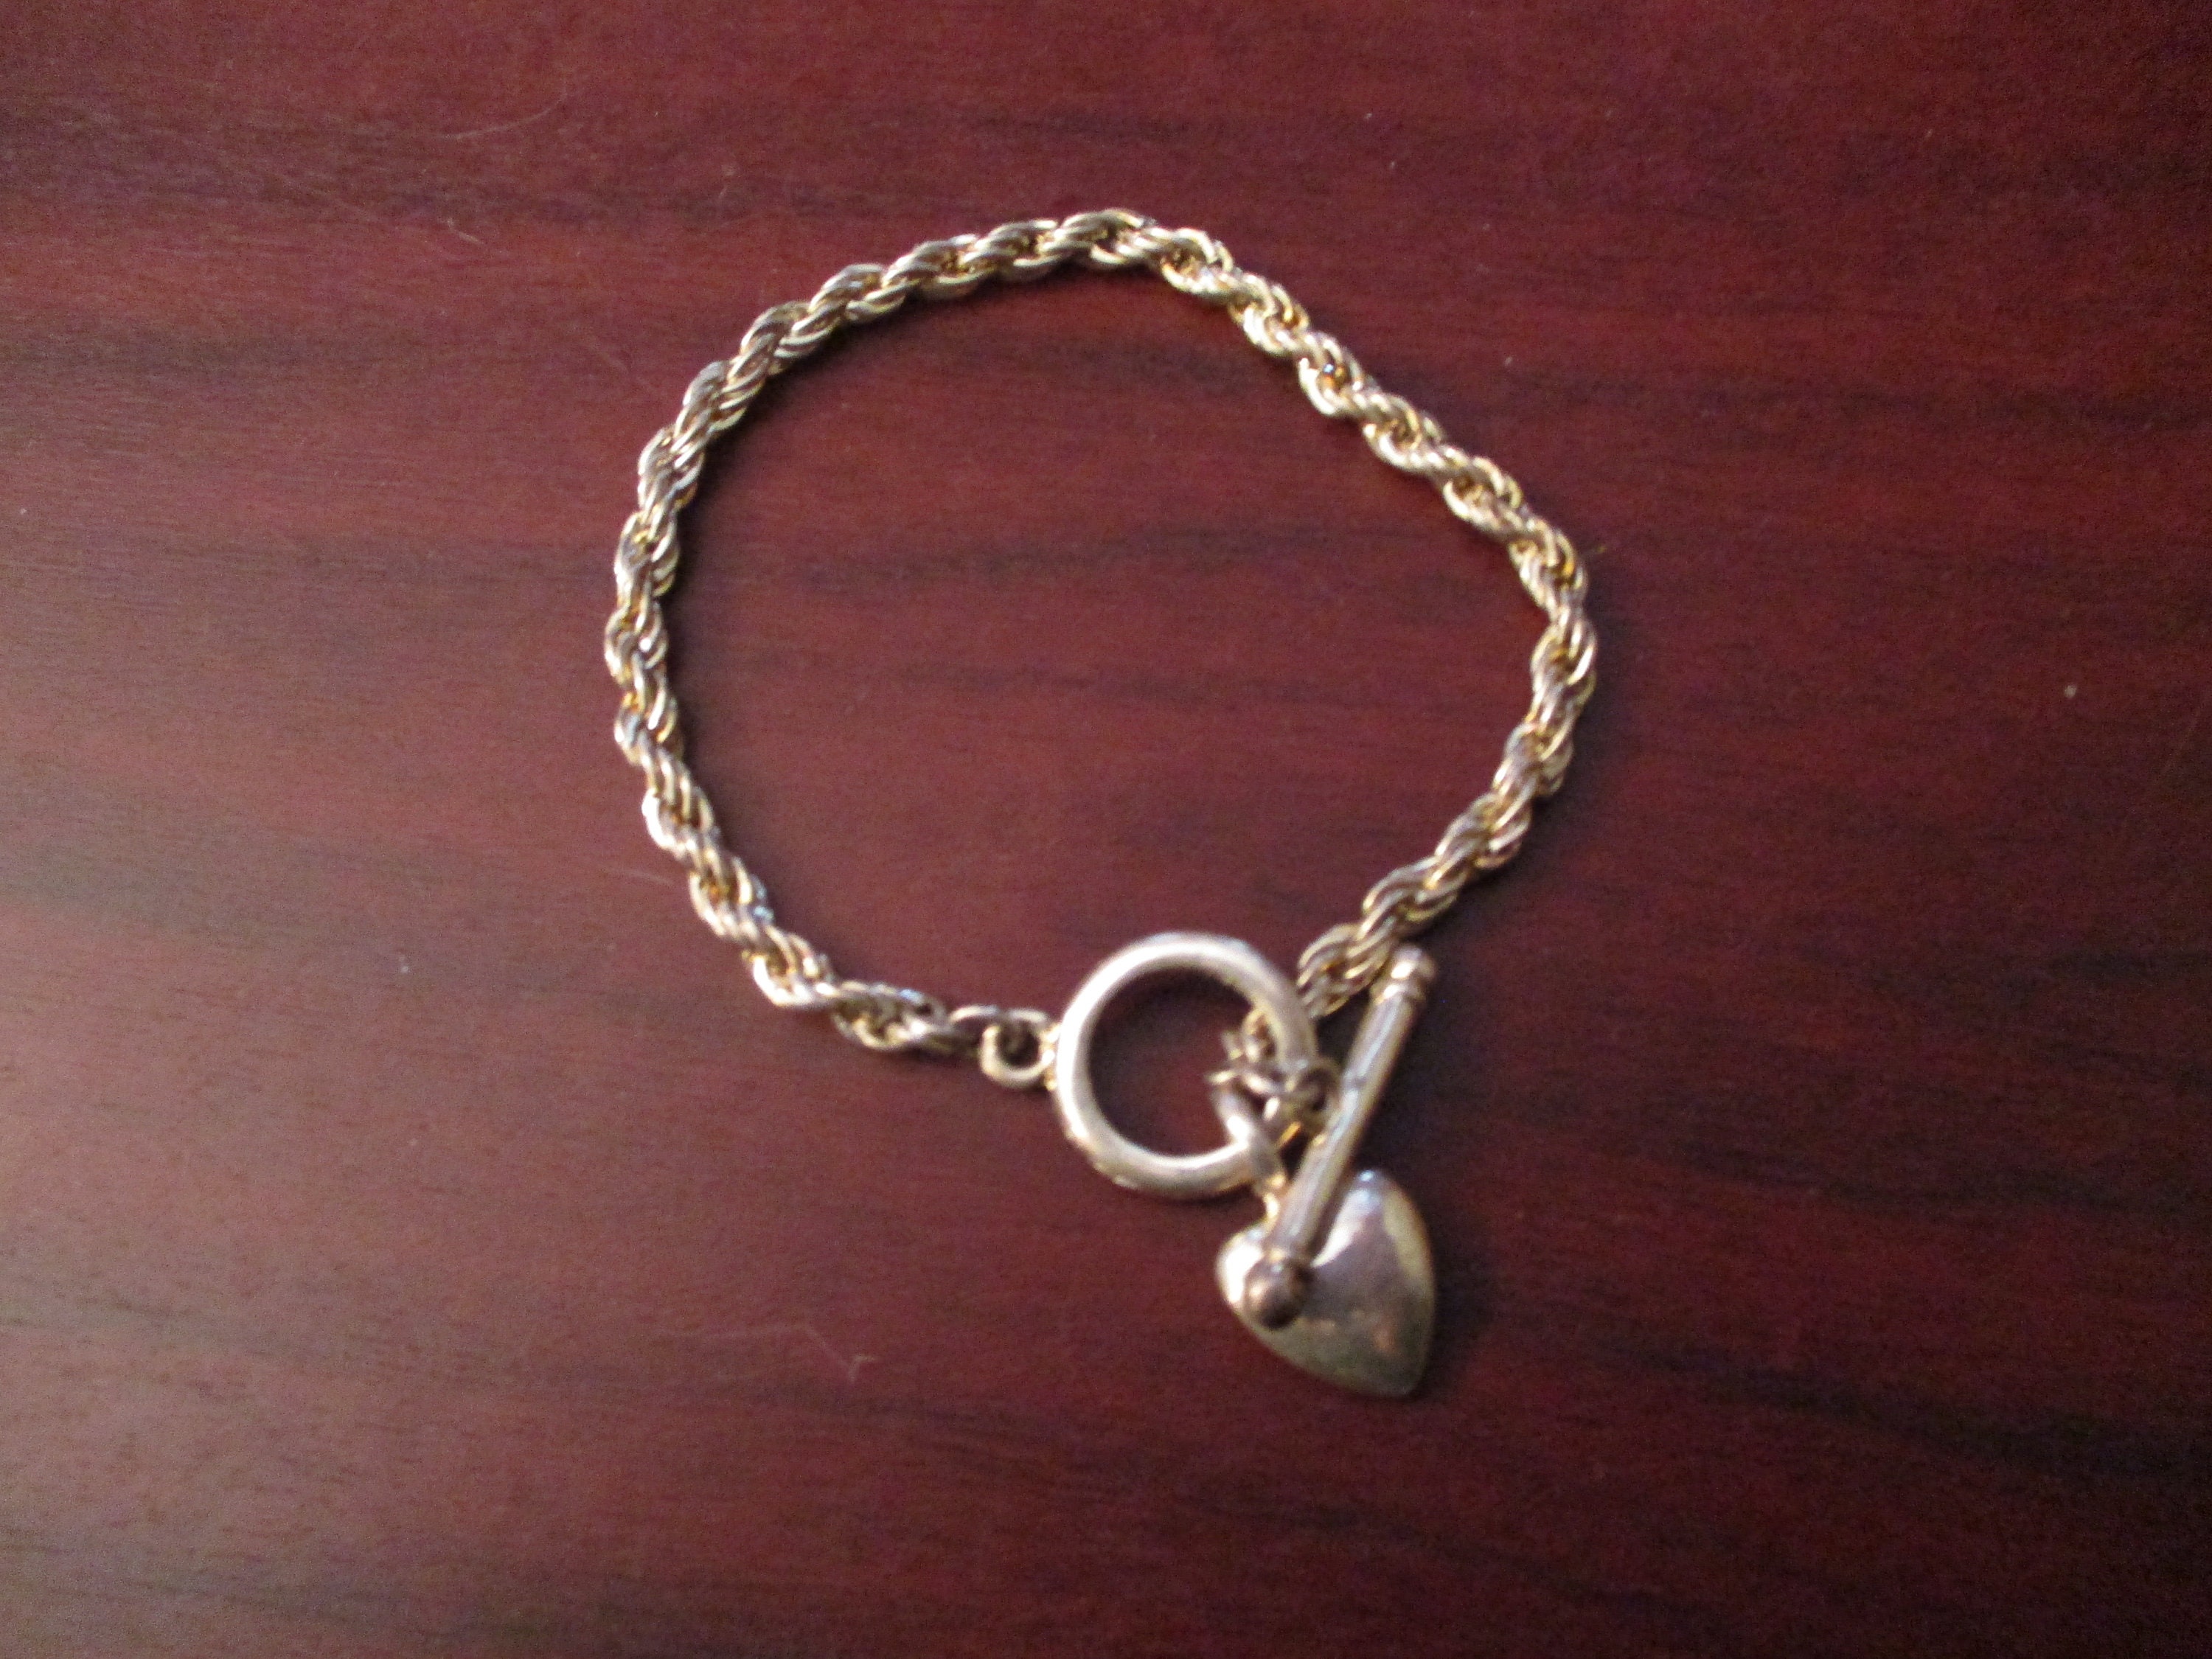 Silver Colour Heart Charm Chain Bracelet | Etsy